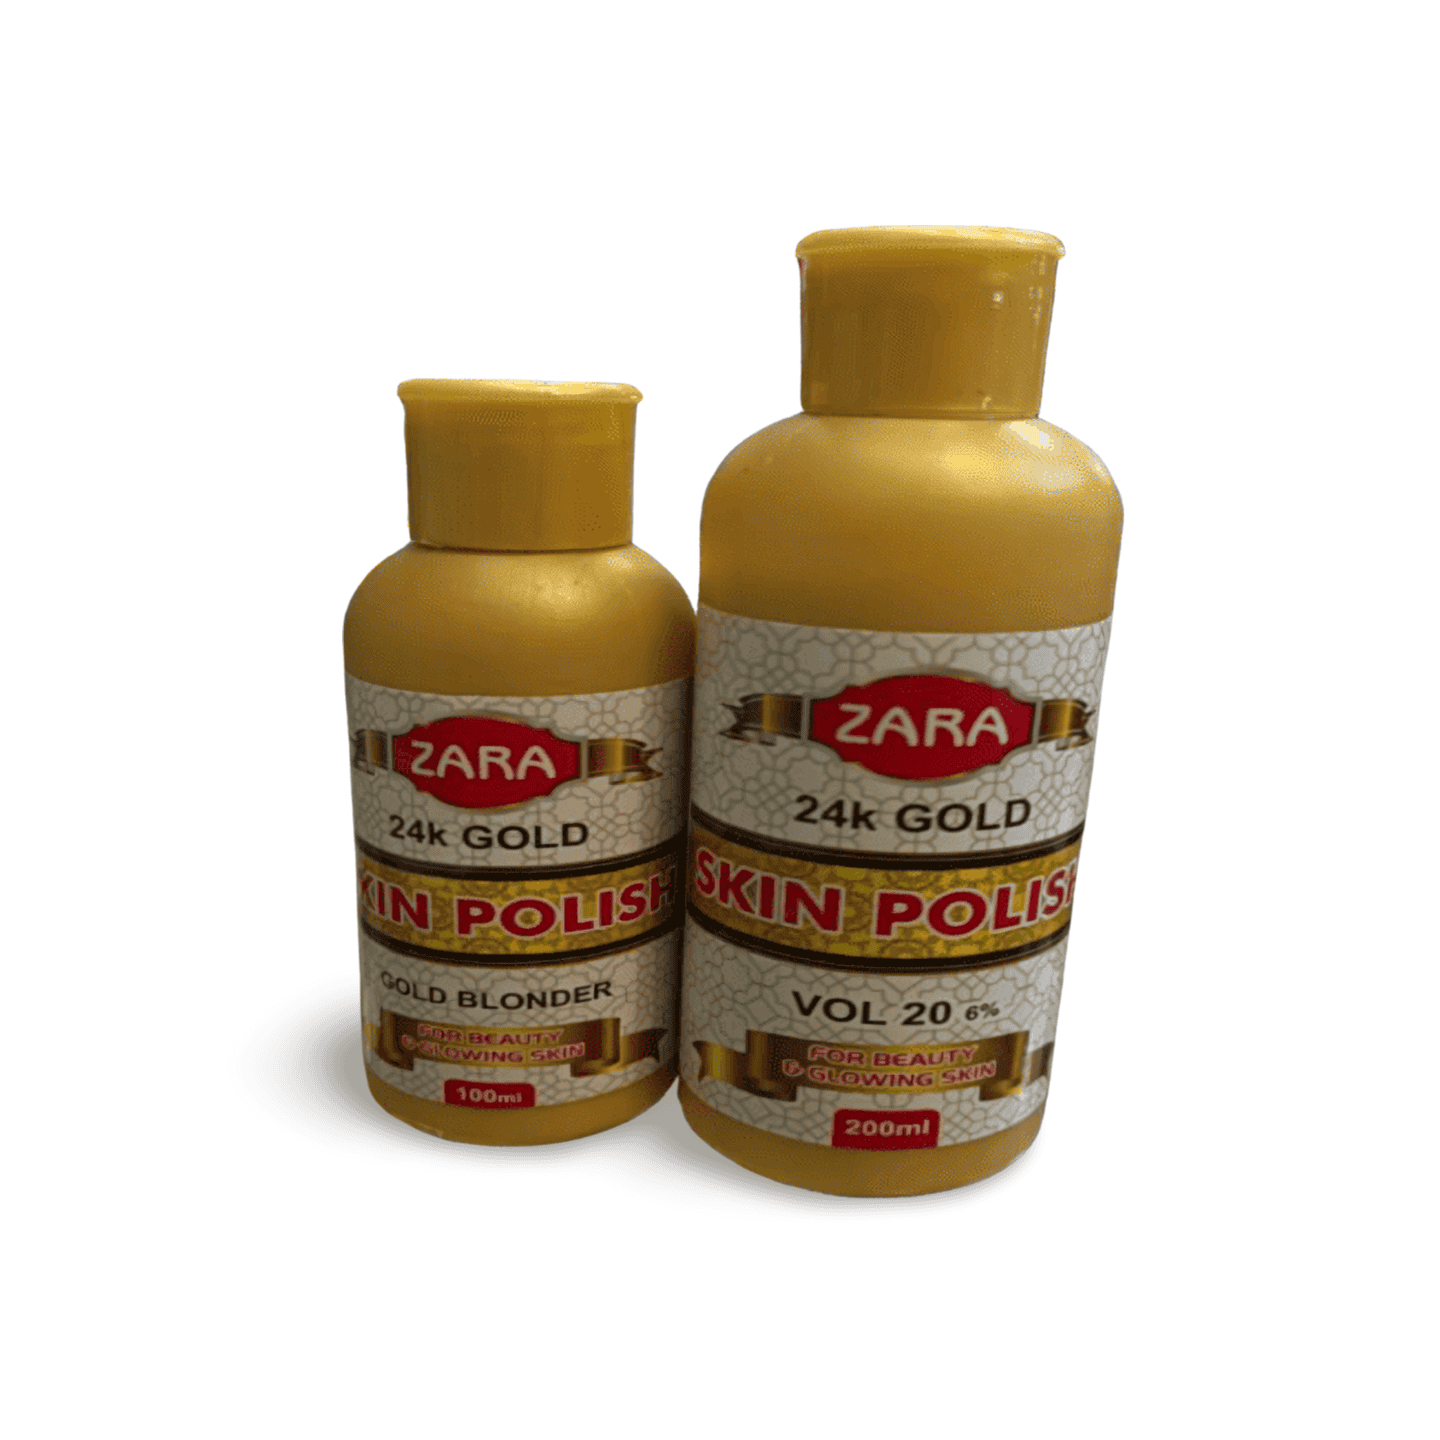 Zara 24K Gold Skin Polish